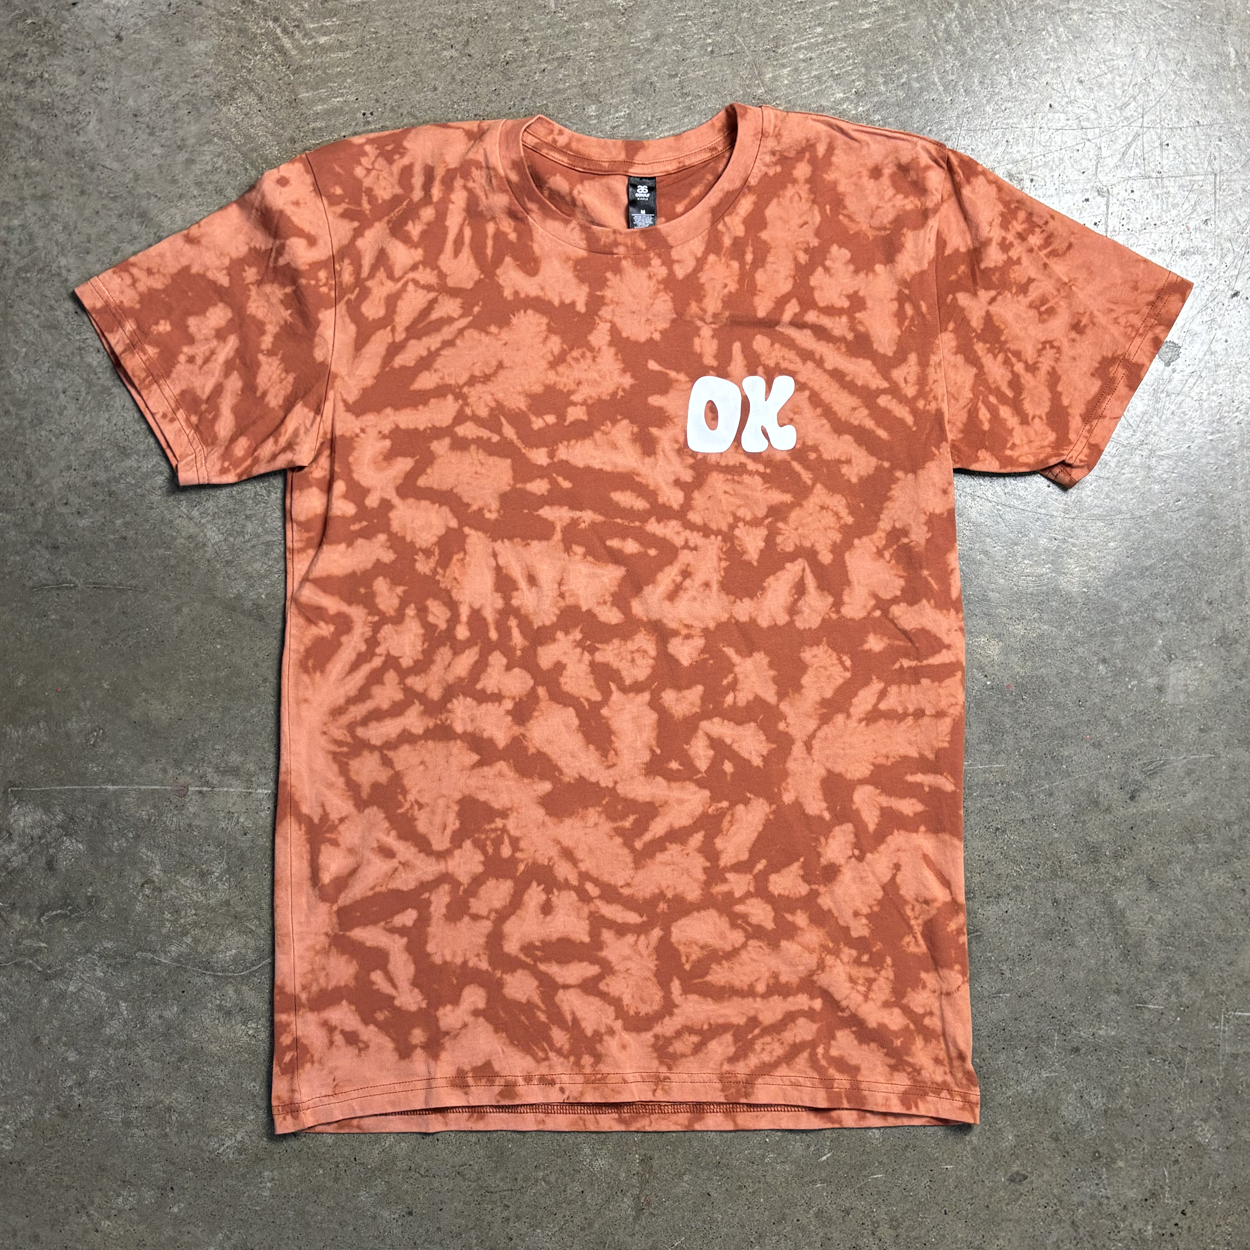 OK Shop Reverse Tie-Dye  T-Shirt